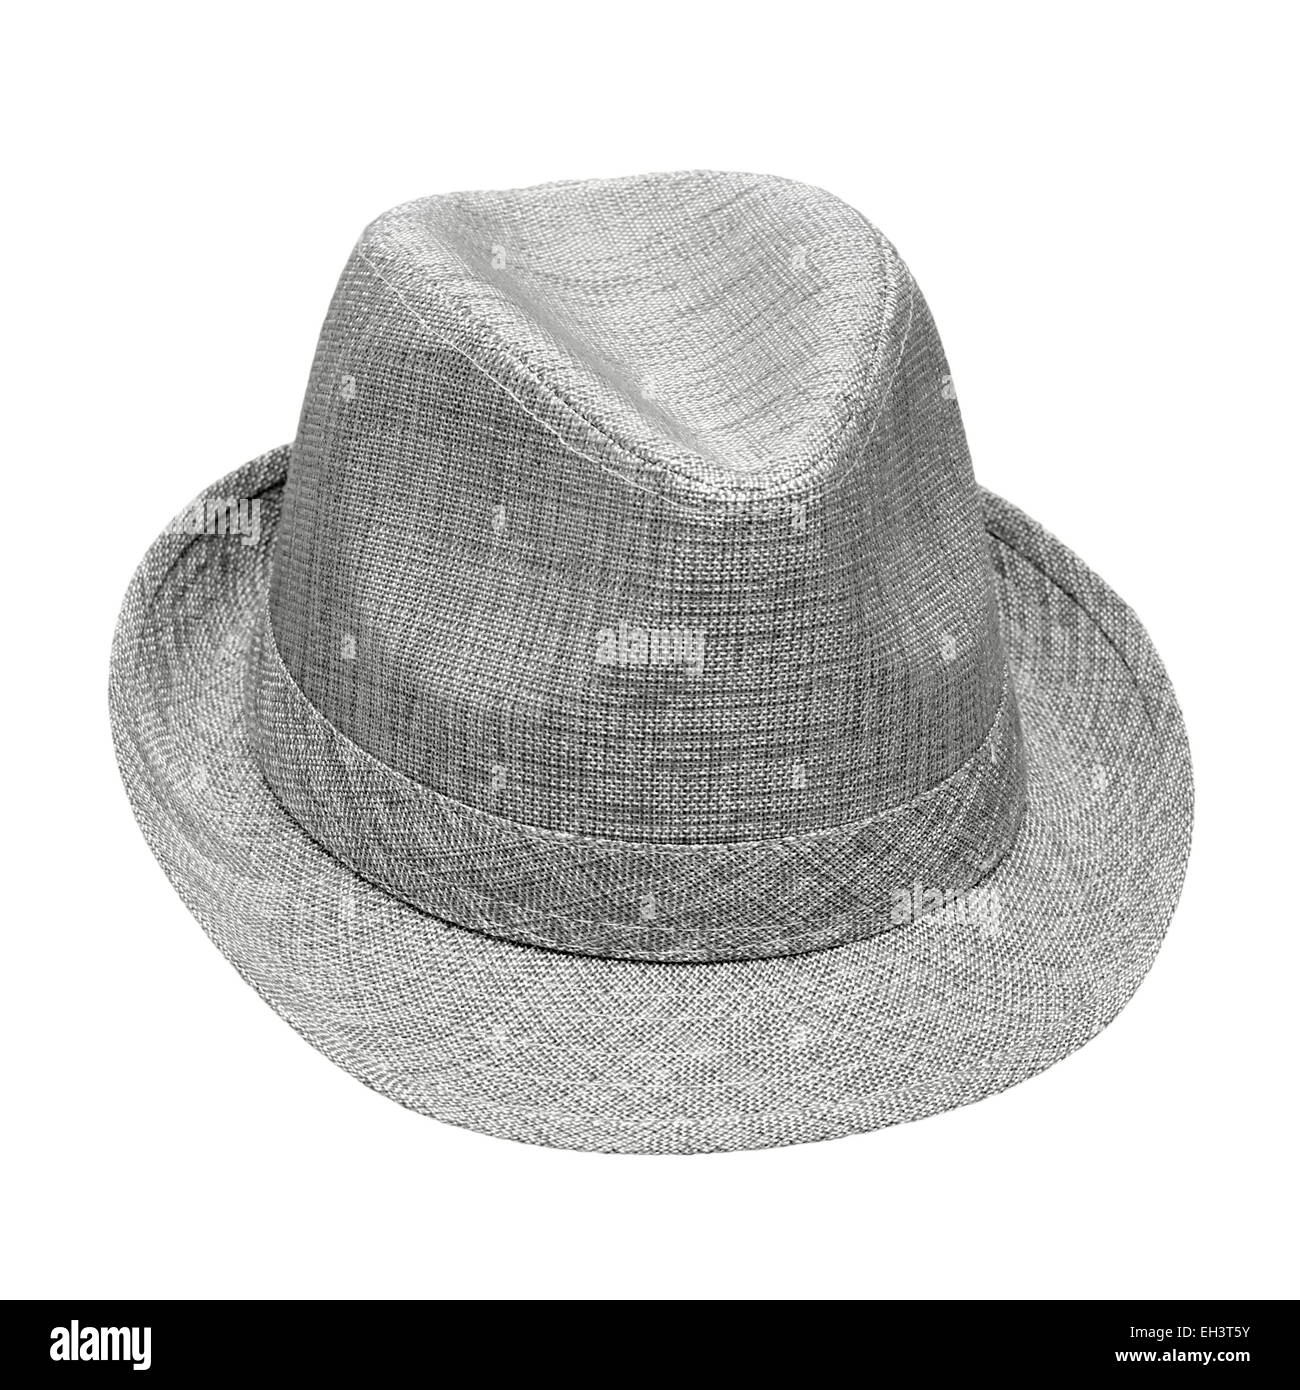 men's felt hat isolated on white background Stock Photo